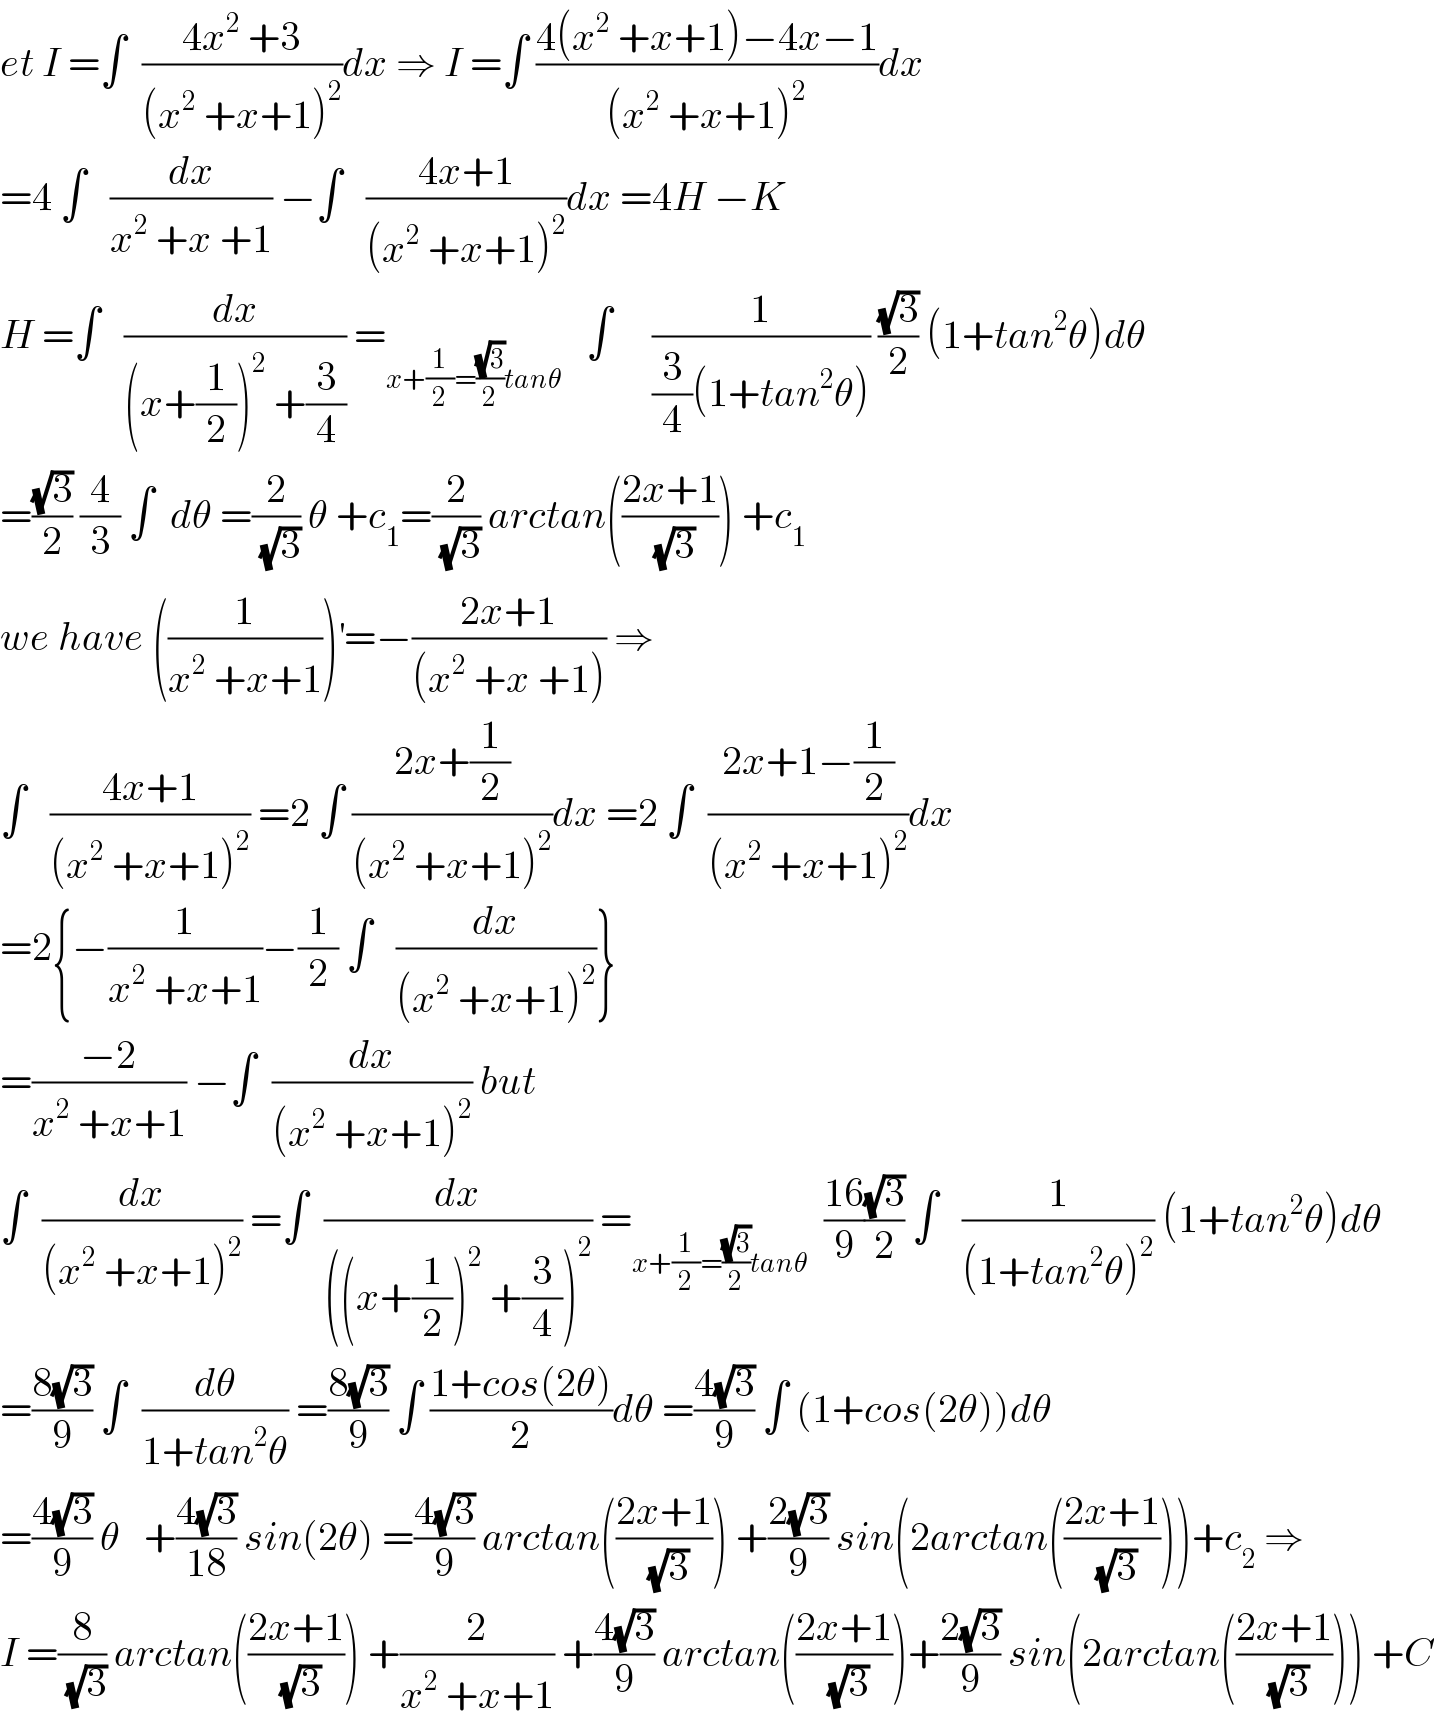 et I =∫  ((4x^2  +3)/((x^2  +x+1)^2 ))dx ⇒ I =∫ ((4(x^2  +x+1)−4x−1)/((x^2  +x+1)^2 ))dx  =4 ∫   (dx/(x^2  +x +1)) −∫   ((4x+1)/((x^2  +x+1)^2 ))dx =4H −K  H =∫   (dx/((x+(1/2))^2  +(3/4))) =_(x+(1/2)=((√3)/2)tanθ)    ∫     (1/((3/4)(1+tan^2 θ))) ((√3)/2) (1+tan^2 θ)dθ  =((√3)/2) (4/3) ∫  dθ =(2/(√3)) θ +c_1 =(2/(√3)) arctan(((2x+1)/(√3))) +c_1   we have ((1/(x^2  +x+1)))^′ =−((2x+1)/((x^2  +x +1))) ⇒  ∫   ((4x+1)/((x^2  +x+1)^2 )) =2 ∫ ((2x+(1/2))/((x^2  +x+1)^2 ))dx =2 ∫  ((2x+1−(1/2))/((x^2  +x+1)^2 ))dx  =2{−(1/(x^2  +x+1))−(1/2) ∫   (dx/((x^2  +x+1)^2 ))}  =((−2)/(x^2  +x+1)) −∫  (dx/((x^2  +x+1)^2 )) but  ∫  (dx/((x^2  +x+1)^2 )) =∫  (dx/(((x+(1/2))^2  +(3/4))^2 )) =_(x+(1/2)=((√3)/2)tanθ)   ((16)/9)((√3)/2) ∫   (1/((1+tan^2 θ)^2 )) (1+tan^2 θ)dθ  =((8(√3))/9) ∫  (dθ/(1+tan^2 θ)) =((8(√3))/9) ∫ ((1+cos(2θ))/2)dθ =((4(√3))/9) ∫ (1+cos(2θ))dθ  =((4(√3))/9) θ   +((4(√3))/(18)) sin(2θ) =((4(√3))/9) arctan(((2x+1)/(√3))) +((2(√3))/9) sin(2arctan(((2x+1)/(√3))))+c_2  ⇒  I =(8/(√3)) arctan(((2x+1)/(√3))) +(2/(x^2  +x+1)) +((4(√3))/9) arctan(((2x+1)/(√3)))+((2(√3))/9) sin(2arctan(((2x+1)/(√3)))) +C  